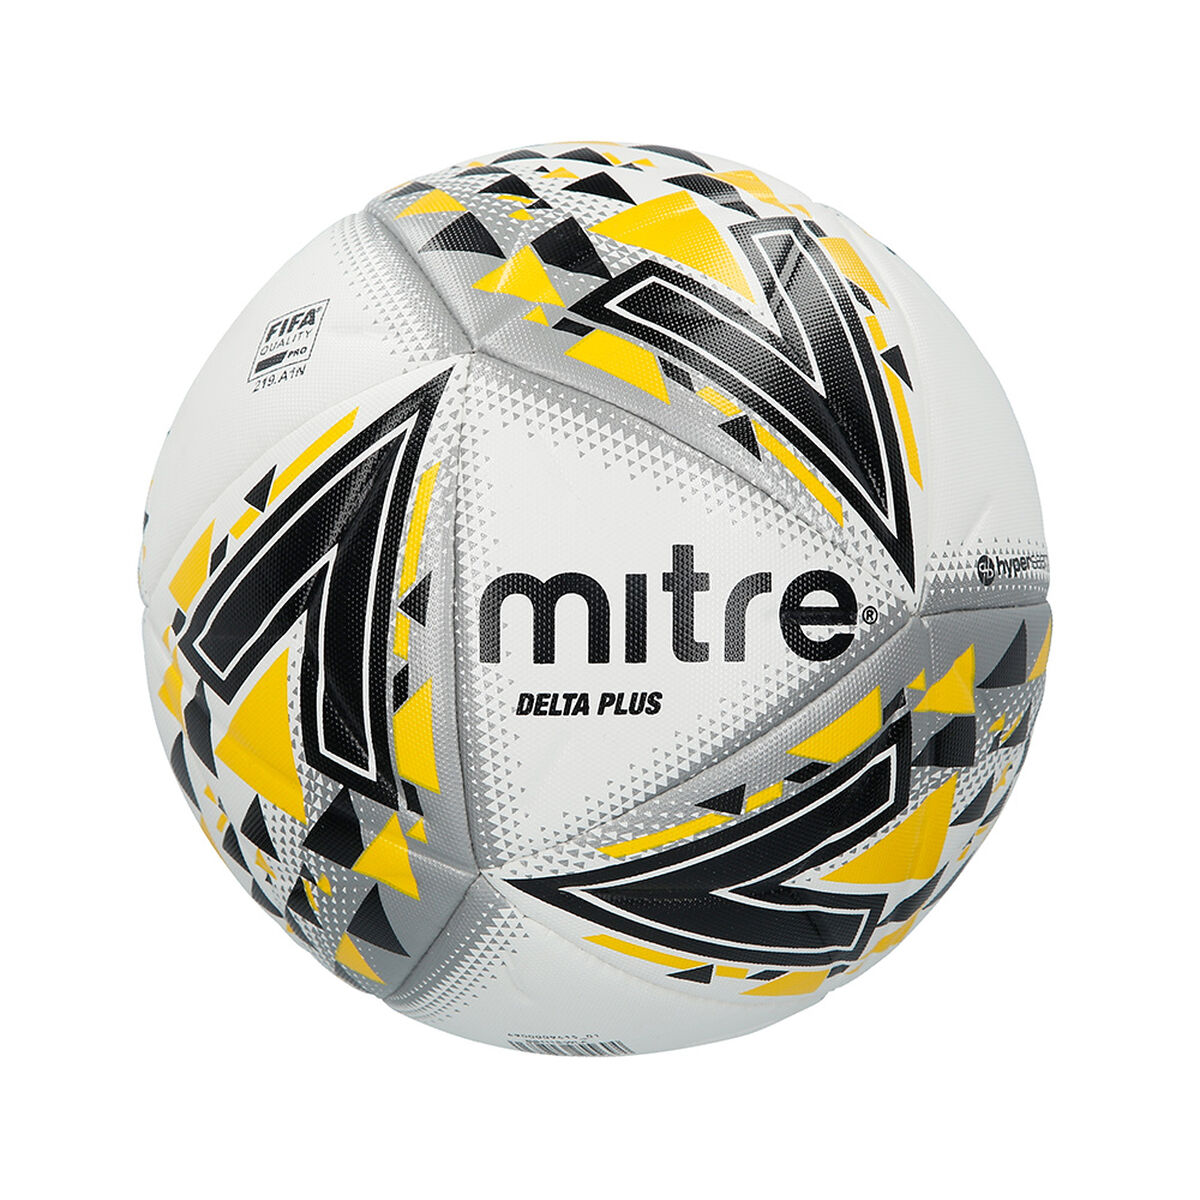 Balón Fútbol Mitre Delta Nº5